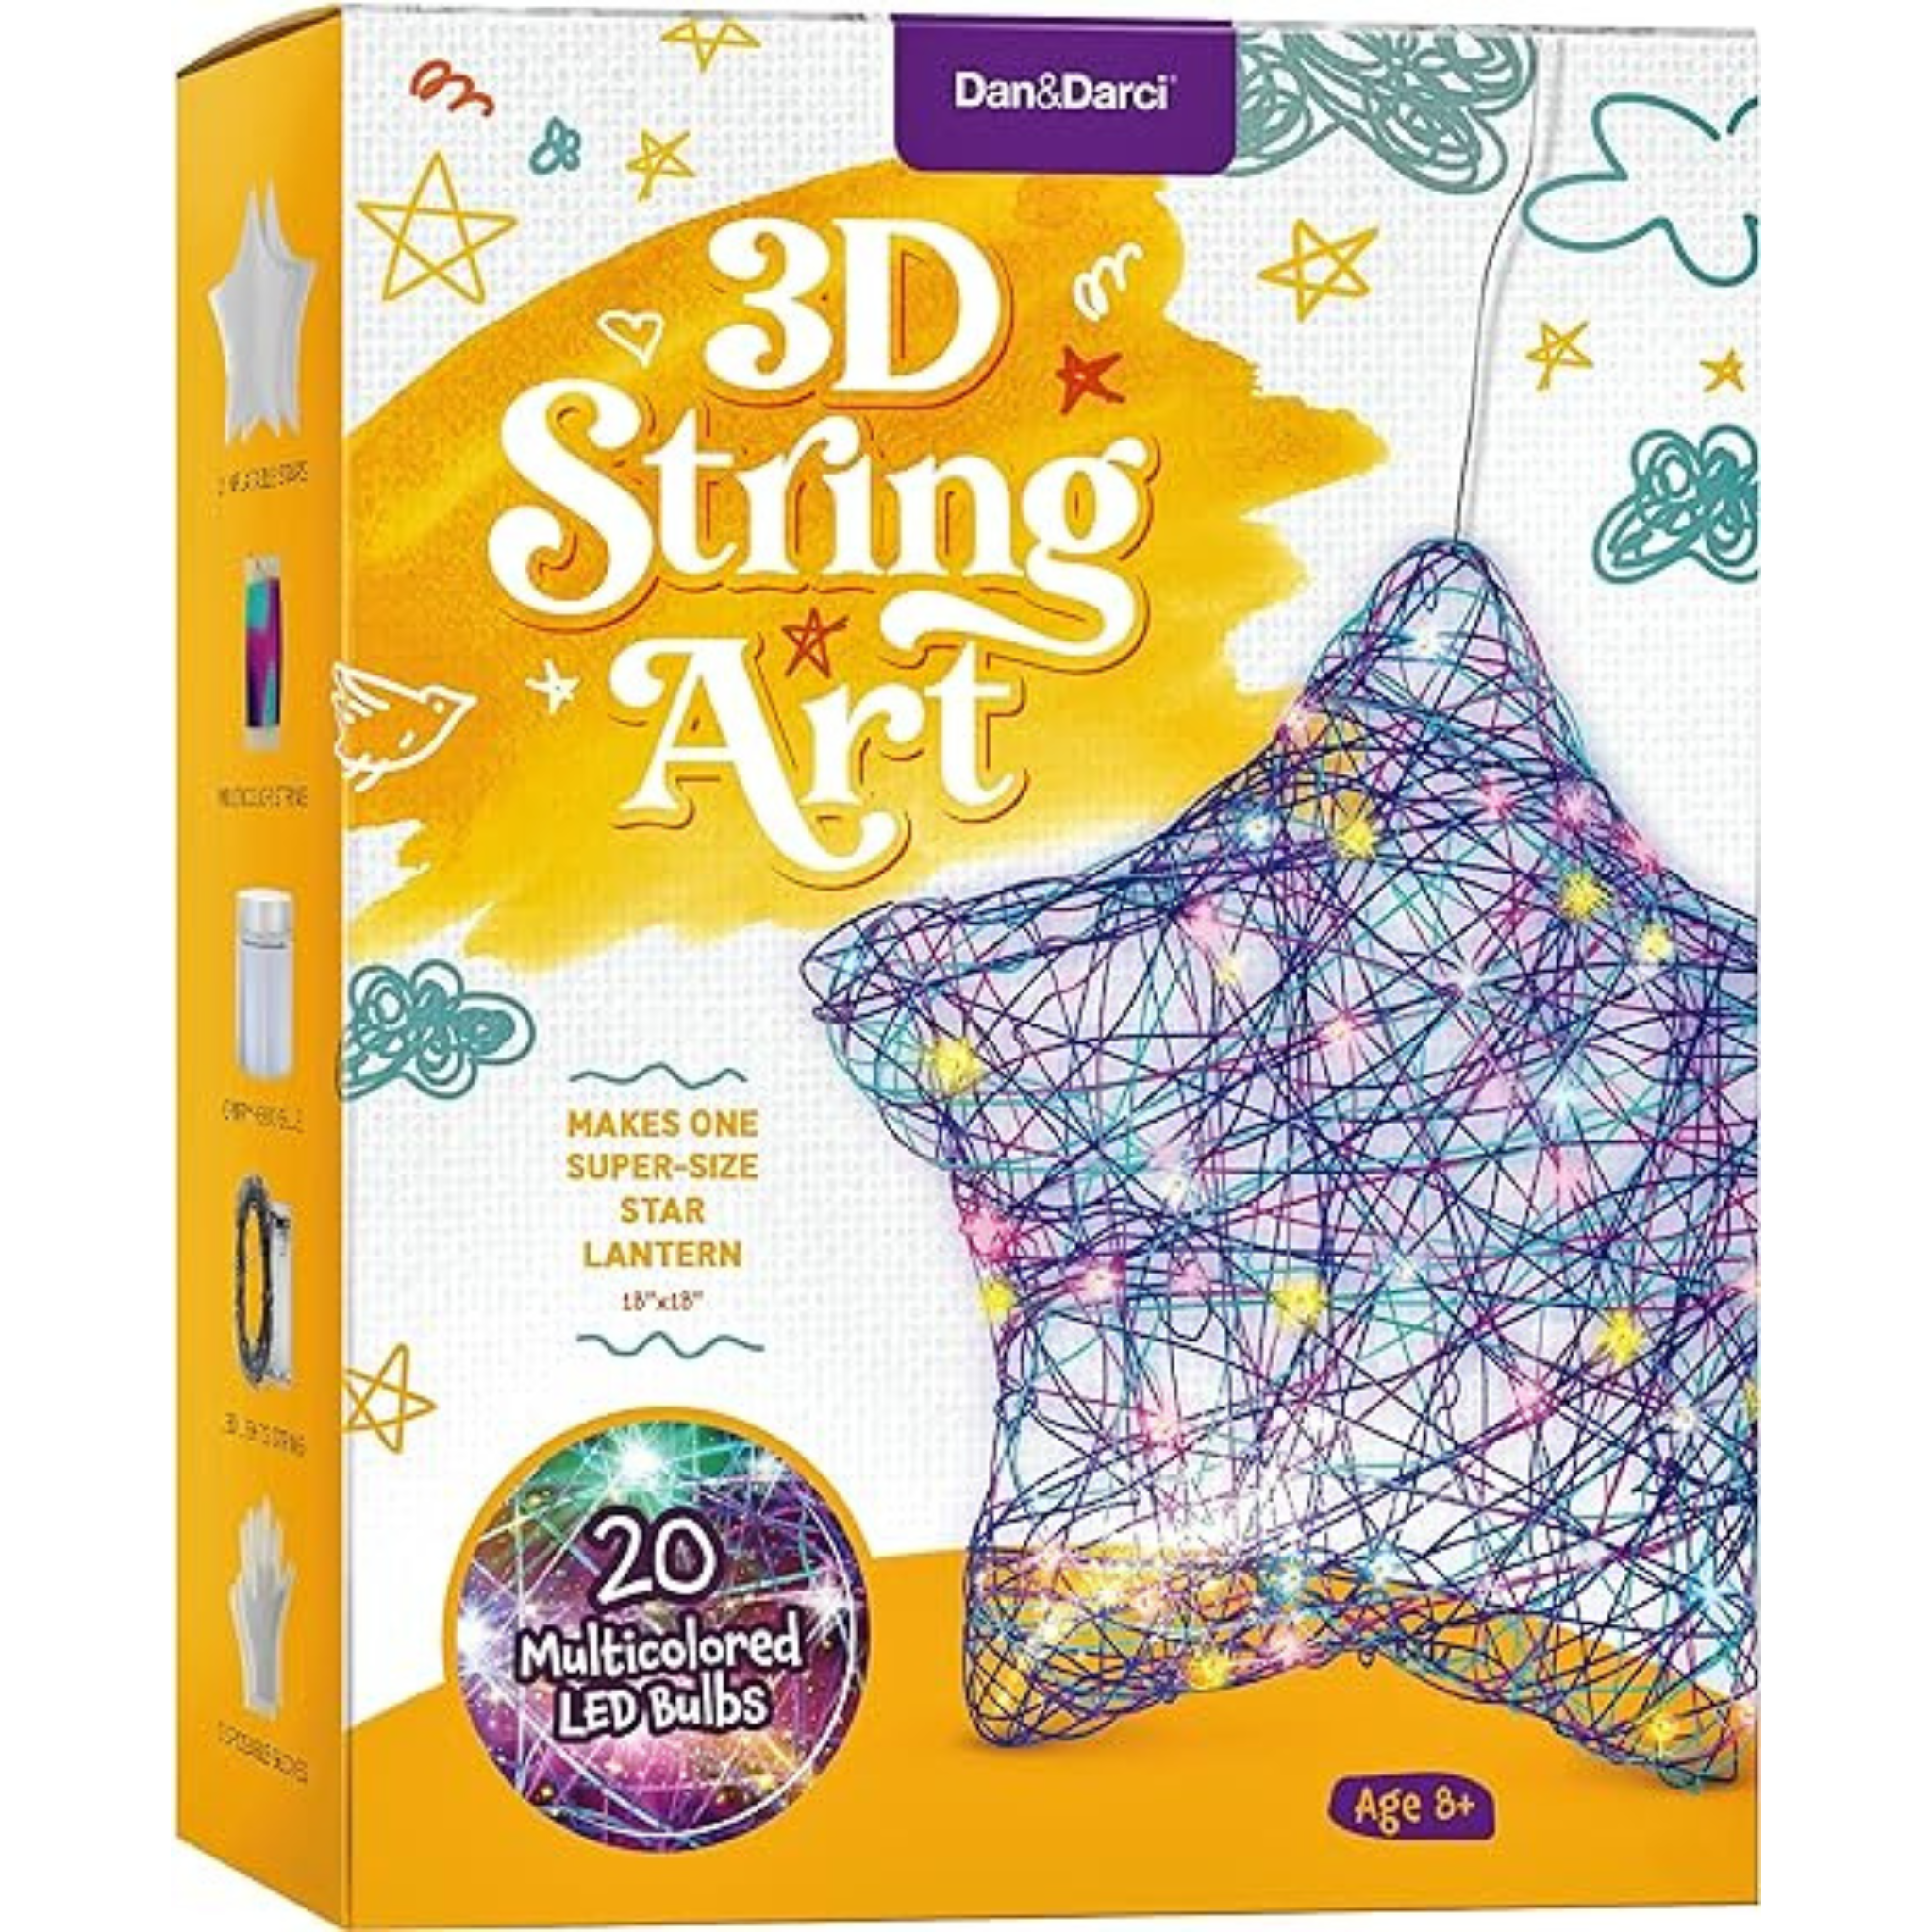 3D Light Up String Art Kit for Kids - Star Lantern with 20 LED